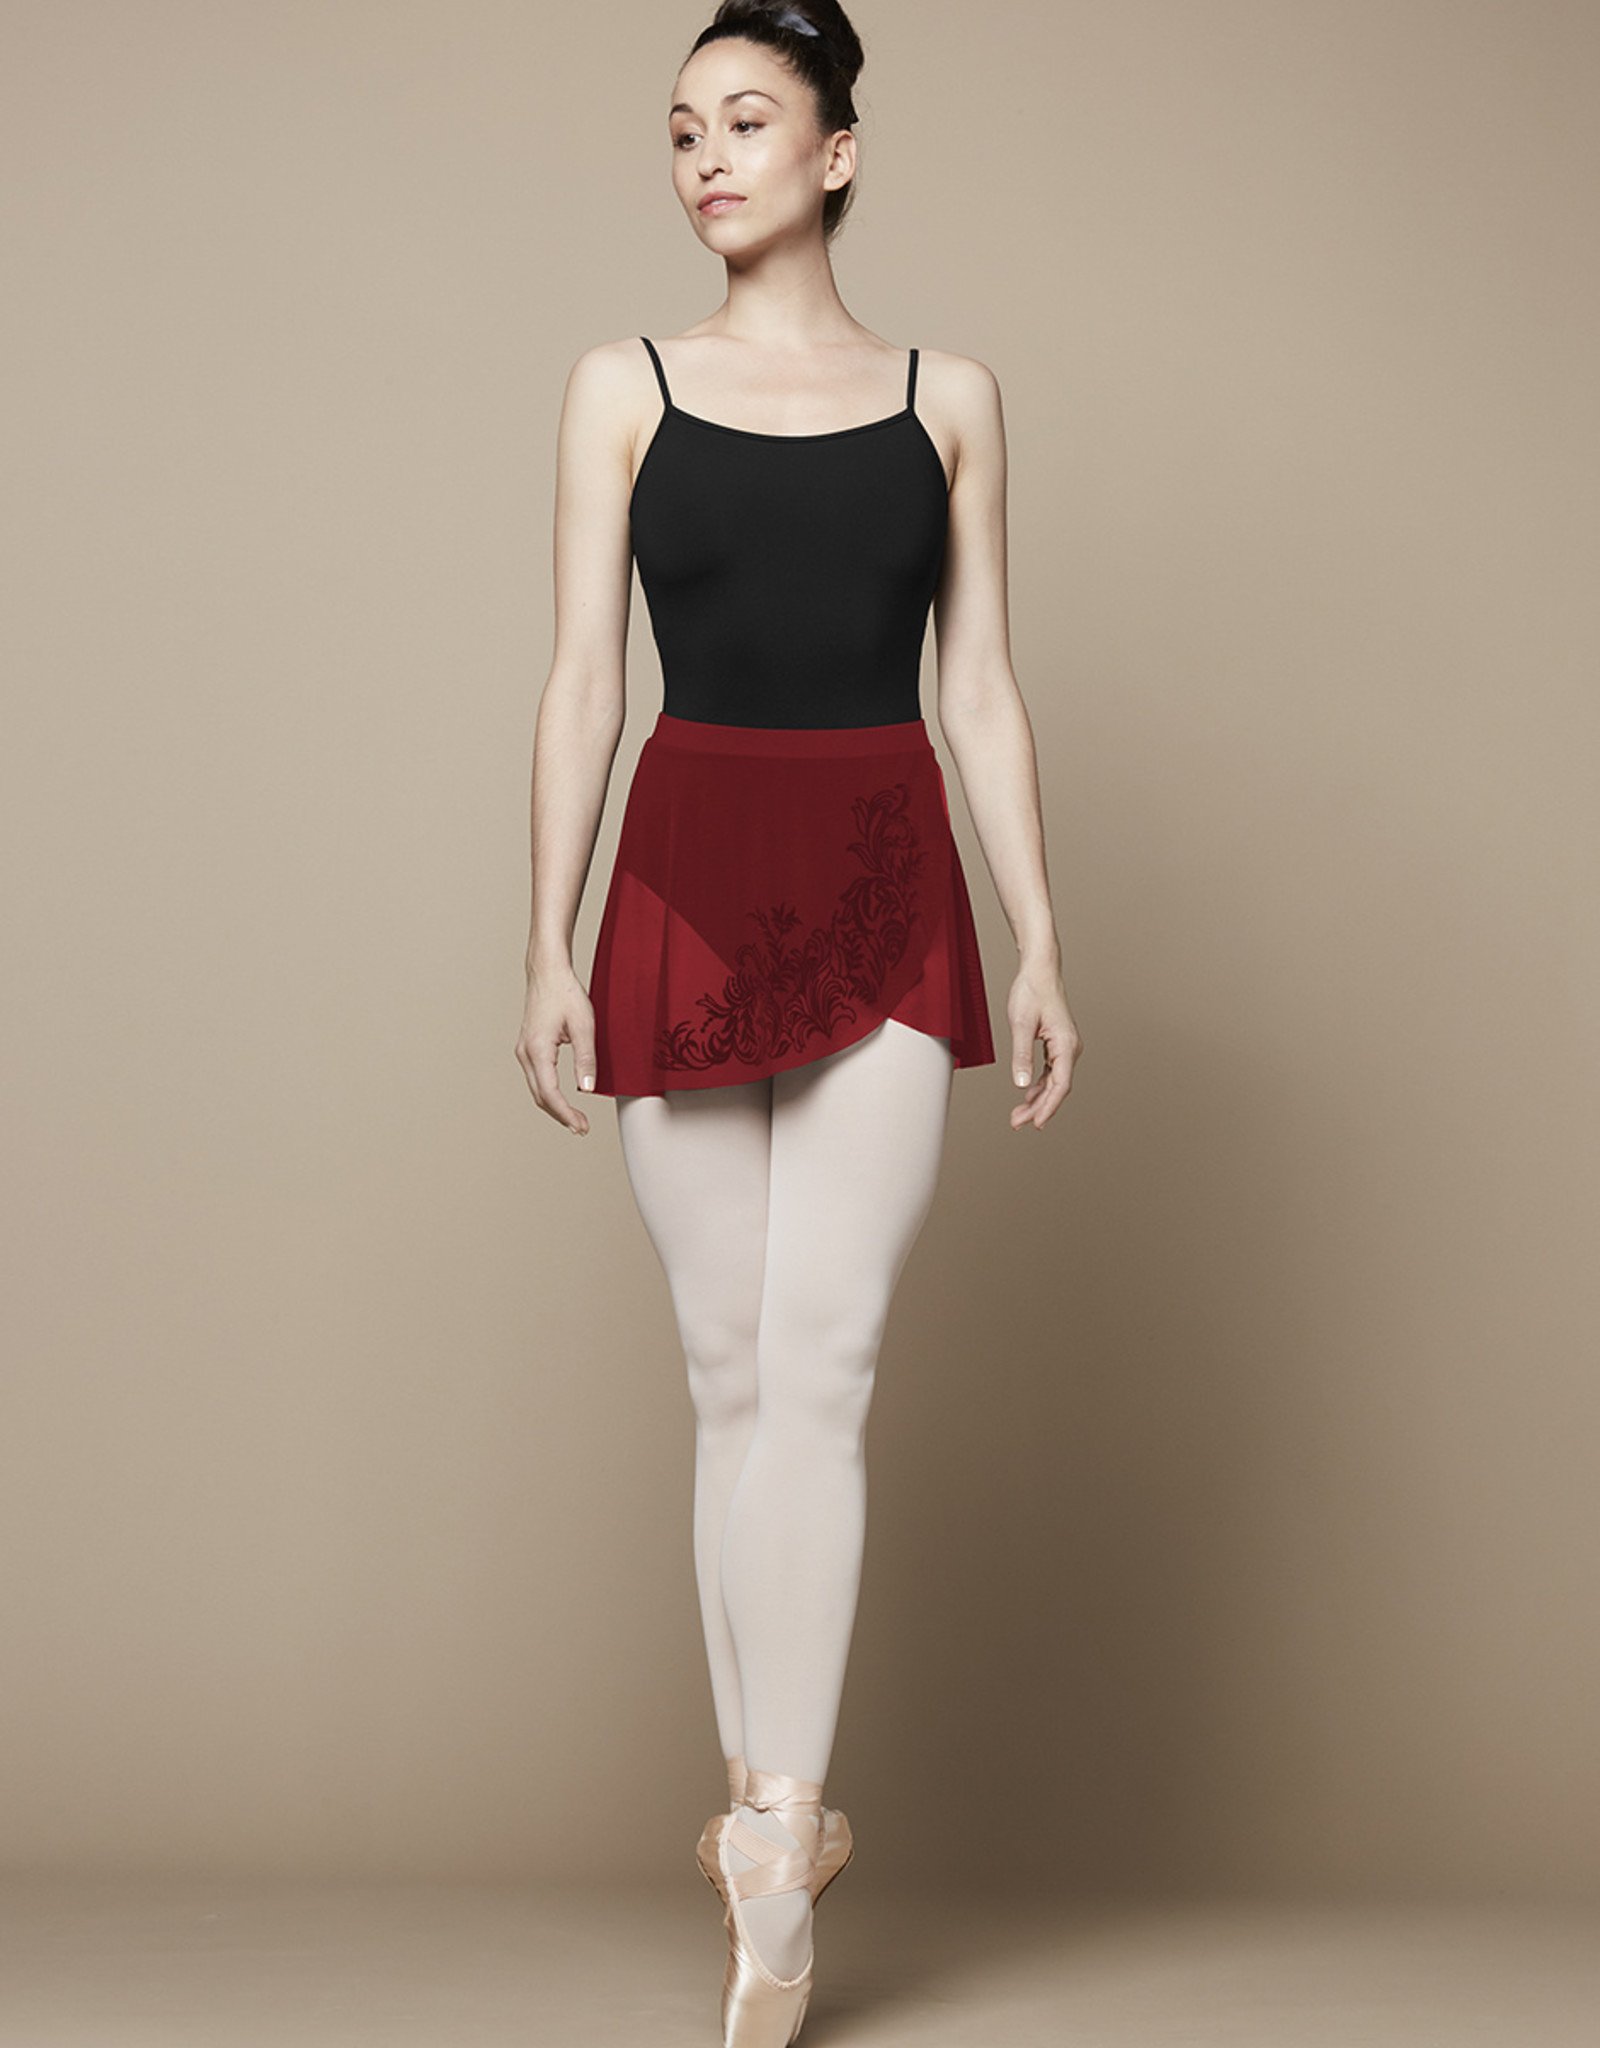 bloch ballet wrap skirt